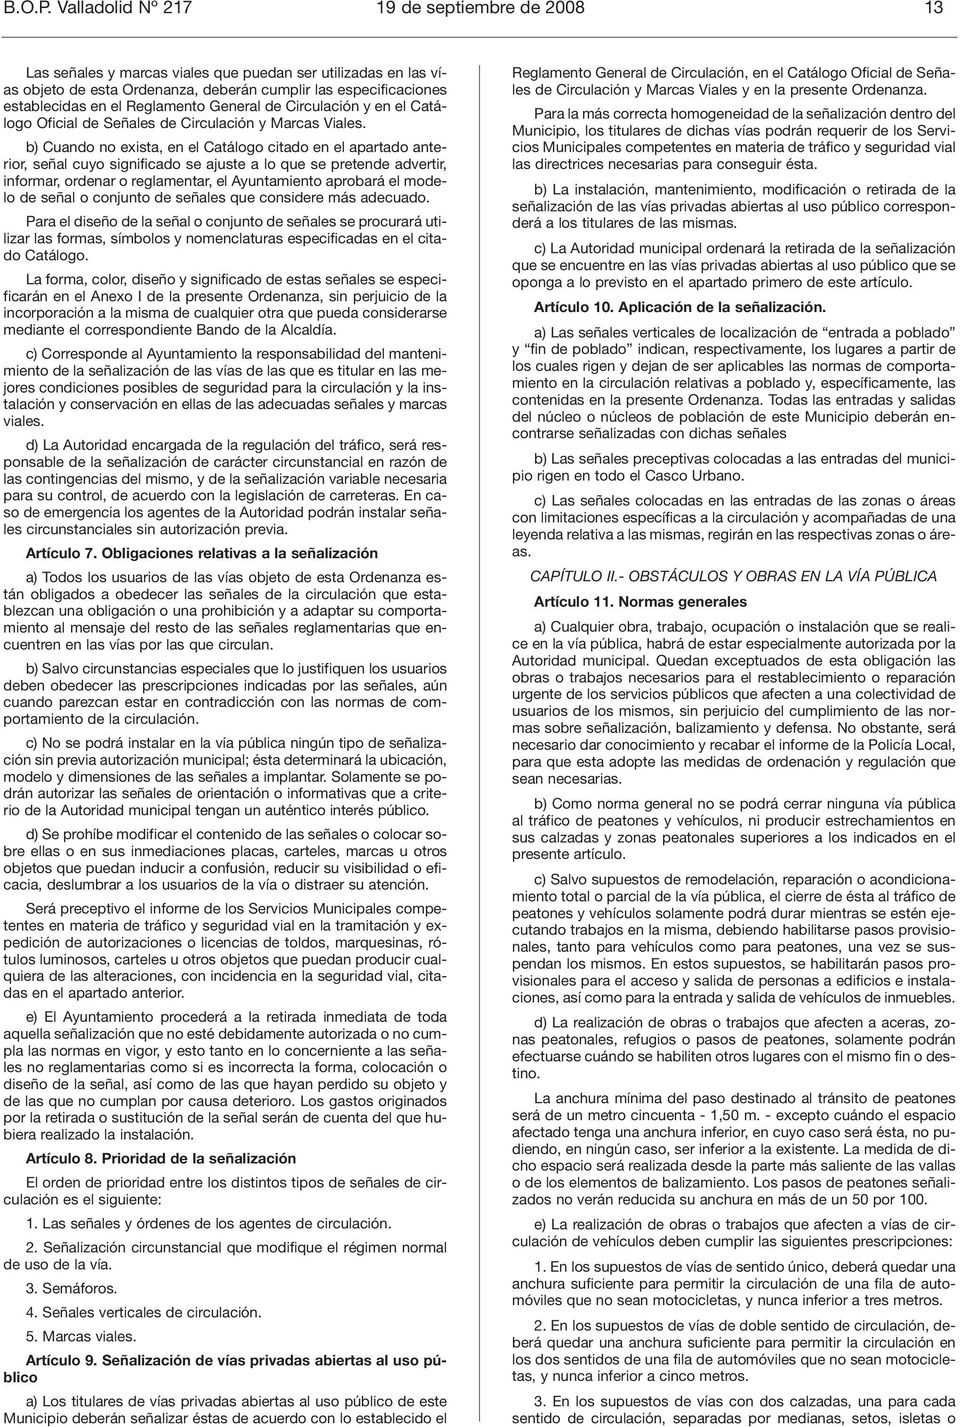 Reglamento General de Circulación y en el Catálogo Oficial de Señales de Circulación y Marcas Viales.